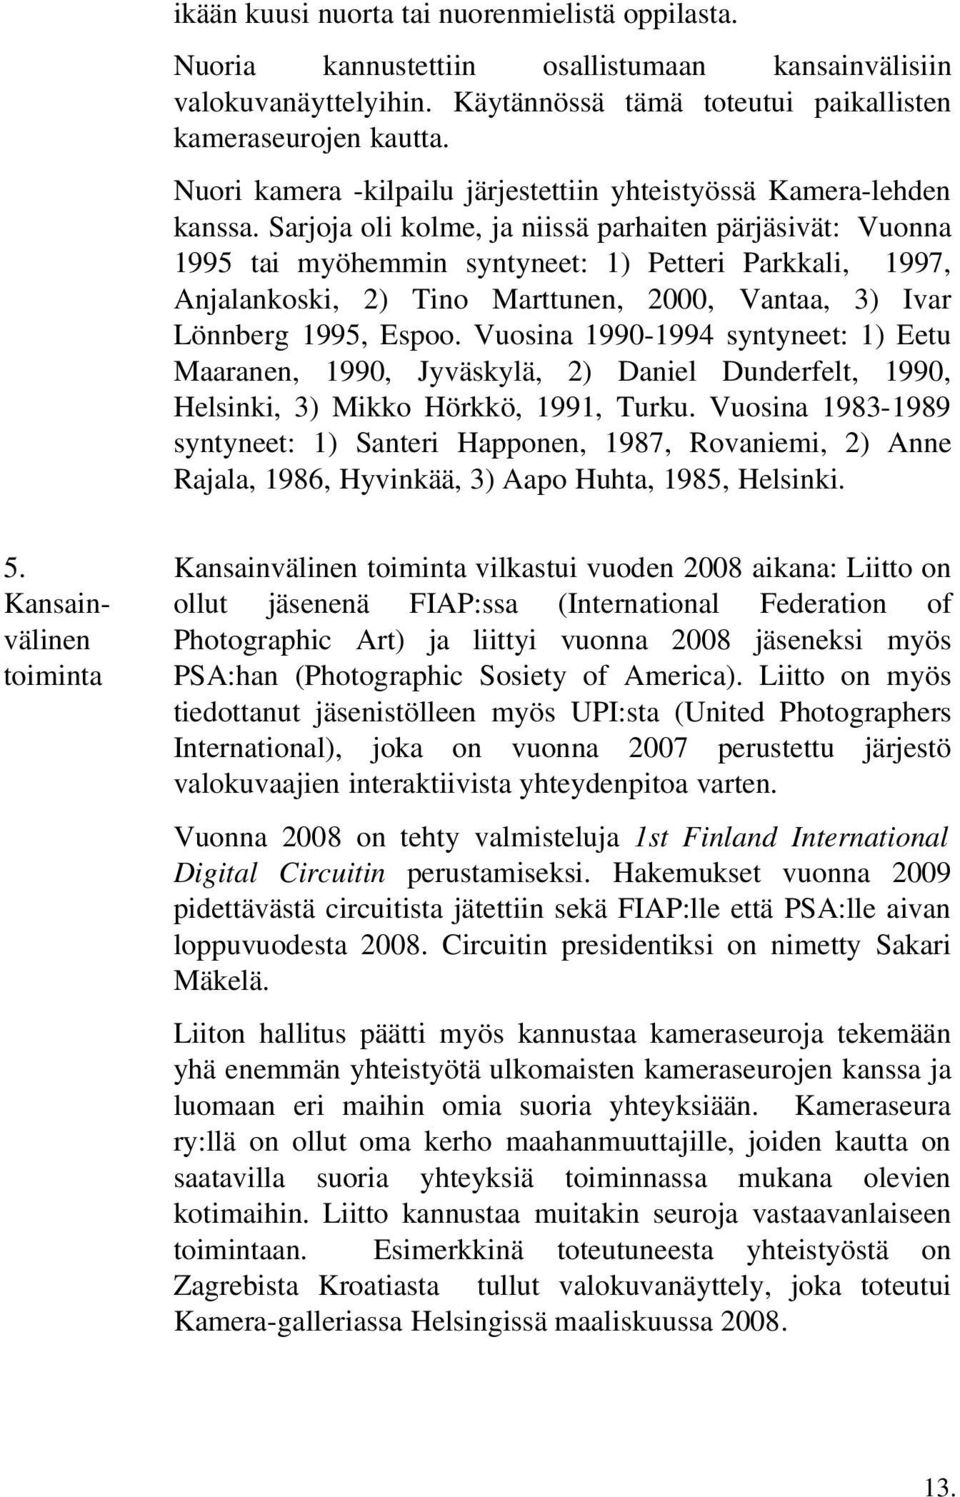 Sarjoja oli kolme, ja niissä parhaiten pärjäsivät: Vuonna 1995 tai myöhemmin syntyneet: 1) Petteri Parkkali, 1997, Anjalankoski, 2) Tino Marttunen, 2000, Vantaa, 3) Ivar Lönnberg 1995, Espoo.